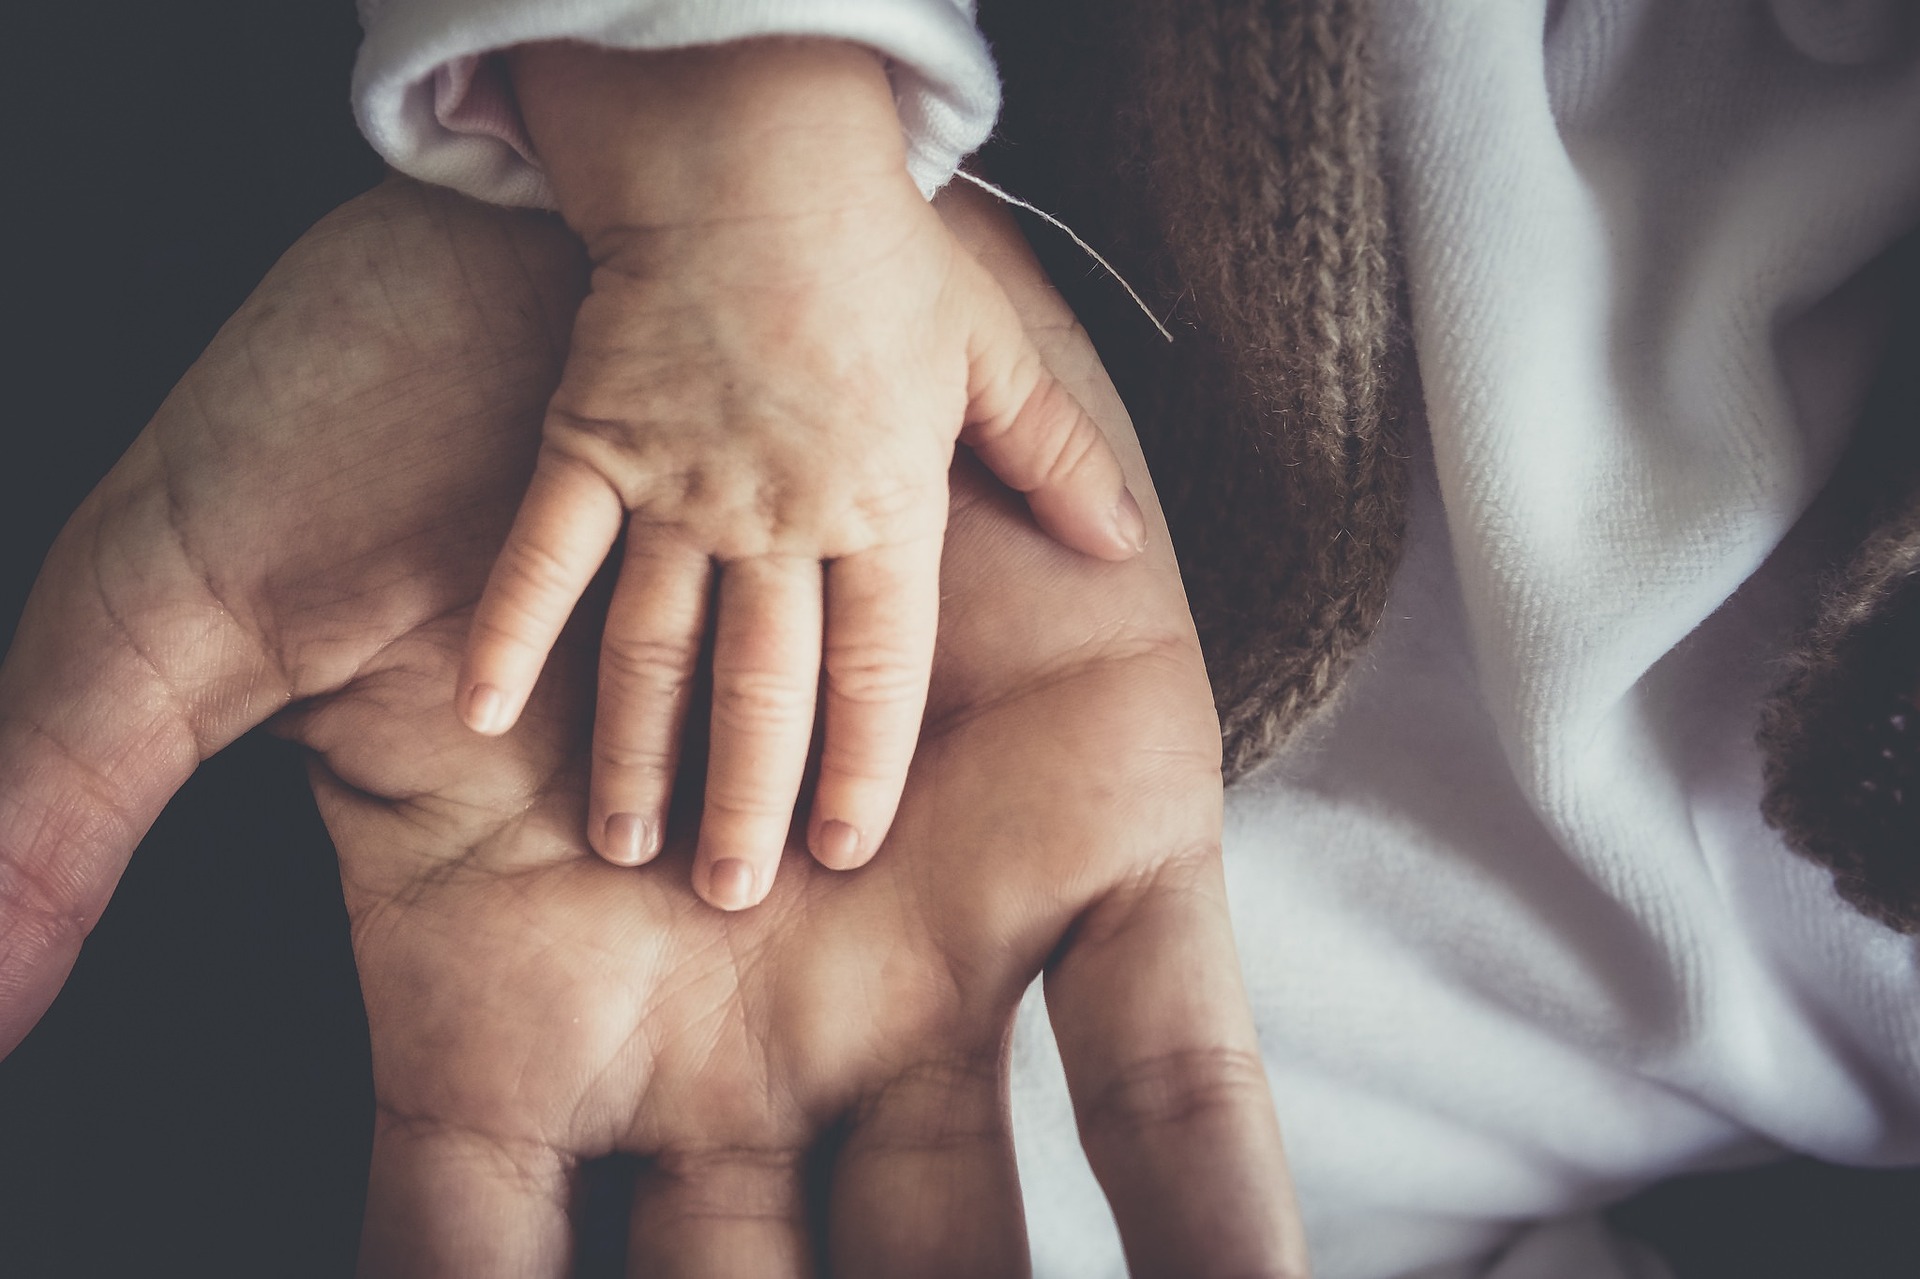 Hands_Father_Child_skalekar1992_pixabay.jpg